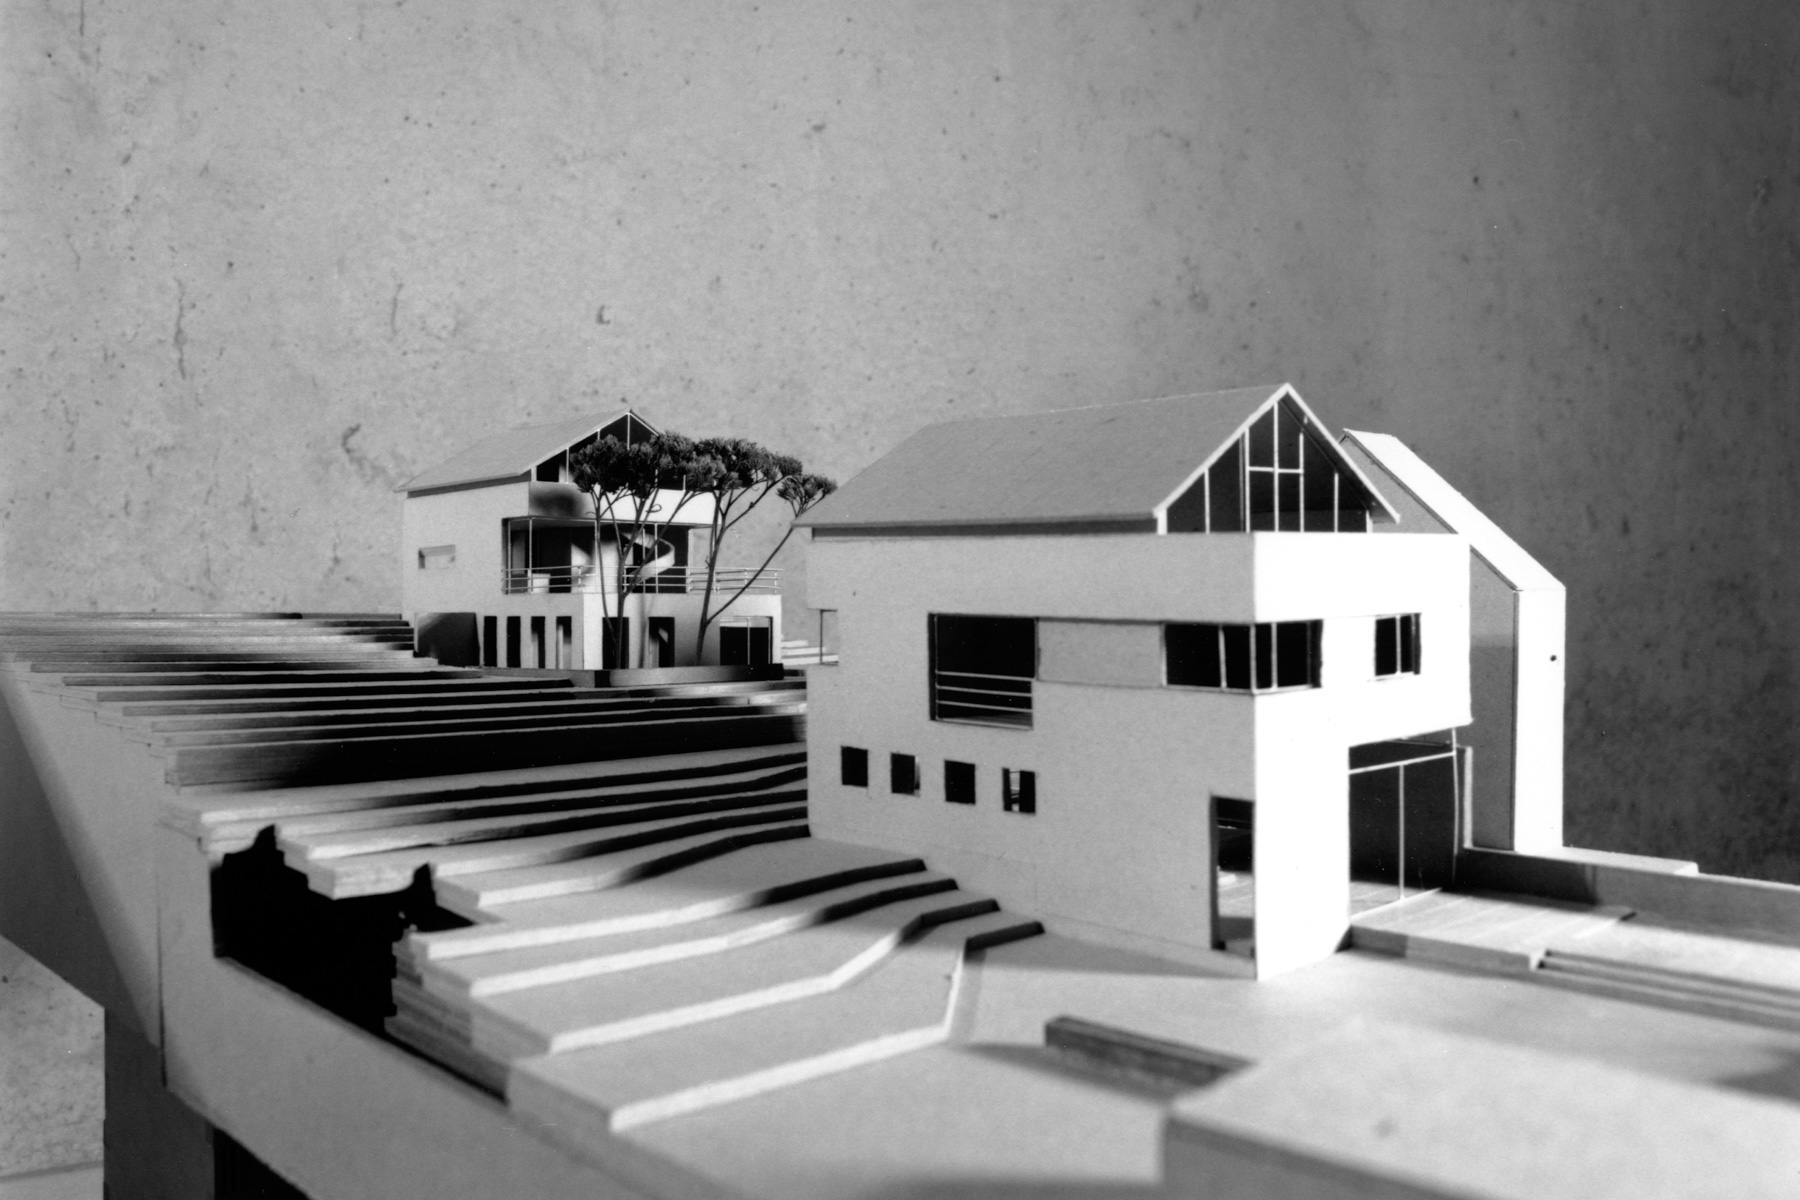 Häuser in Staffelung Modell